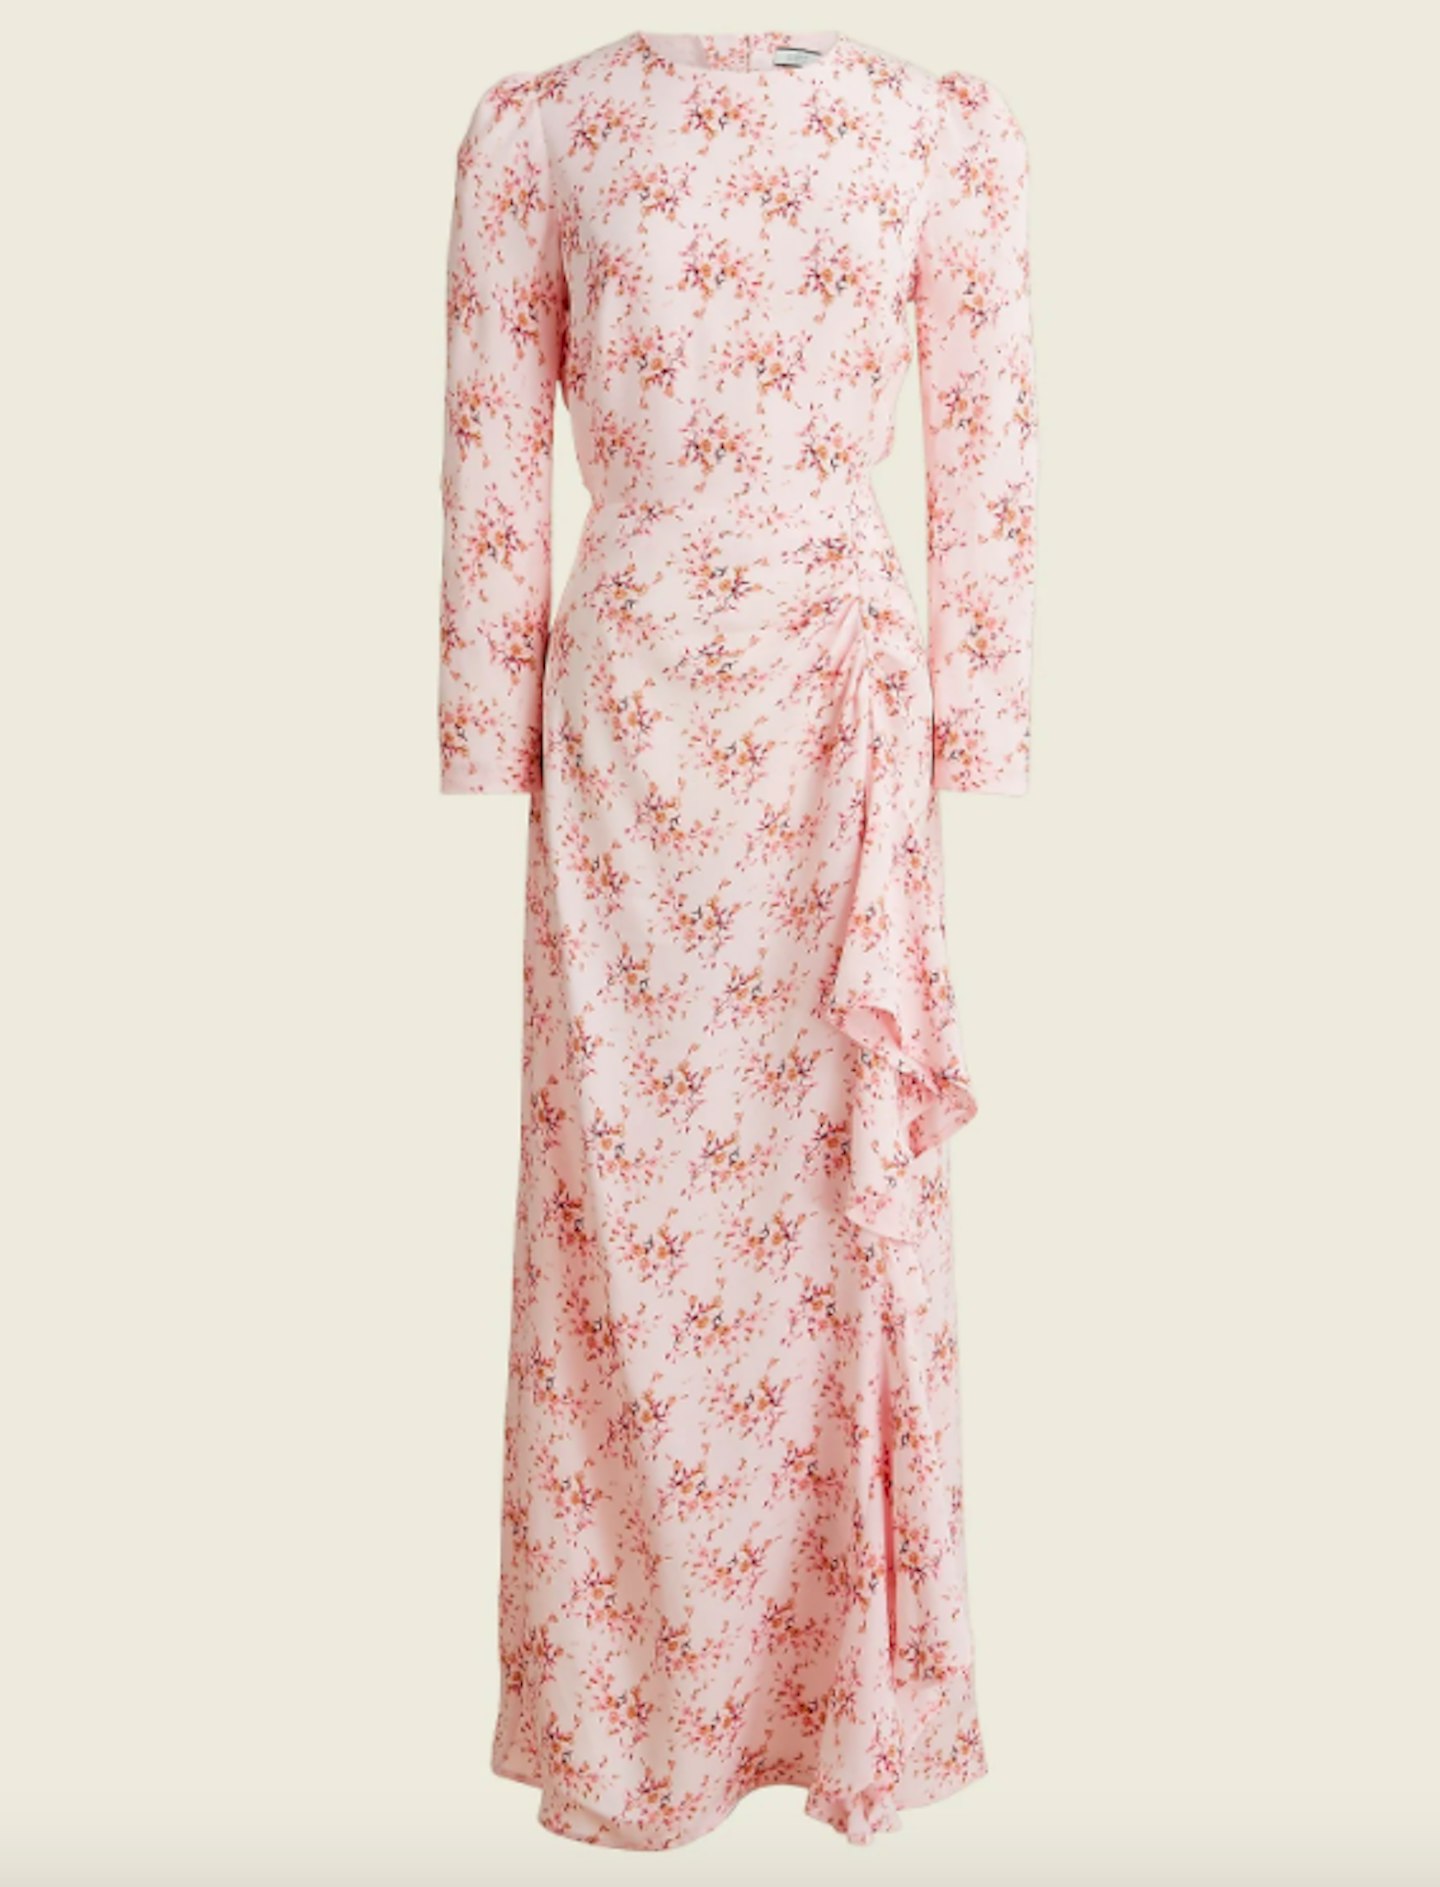 J.Crew, Ruffle Silk Dress In Freesia Floral, £445